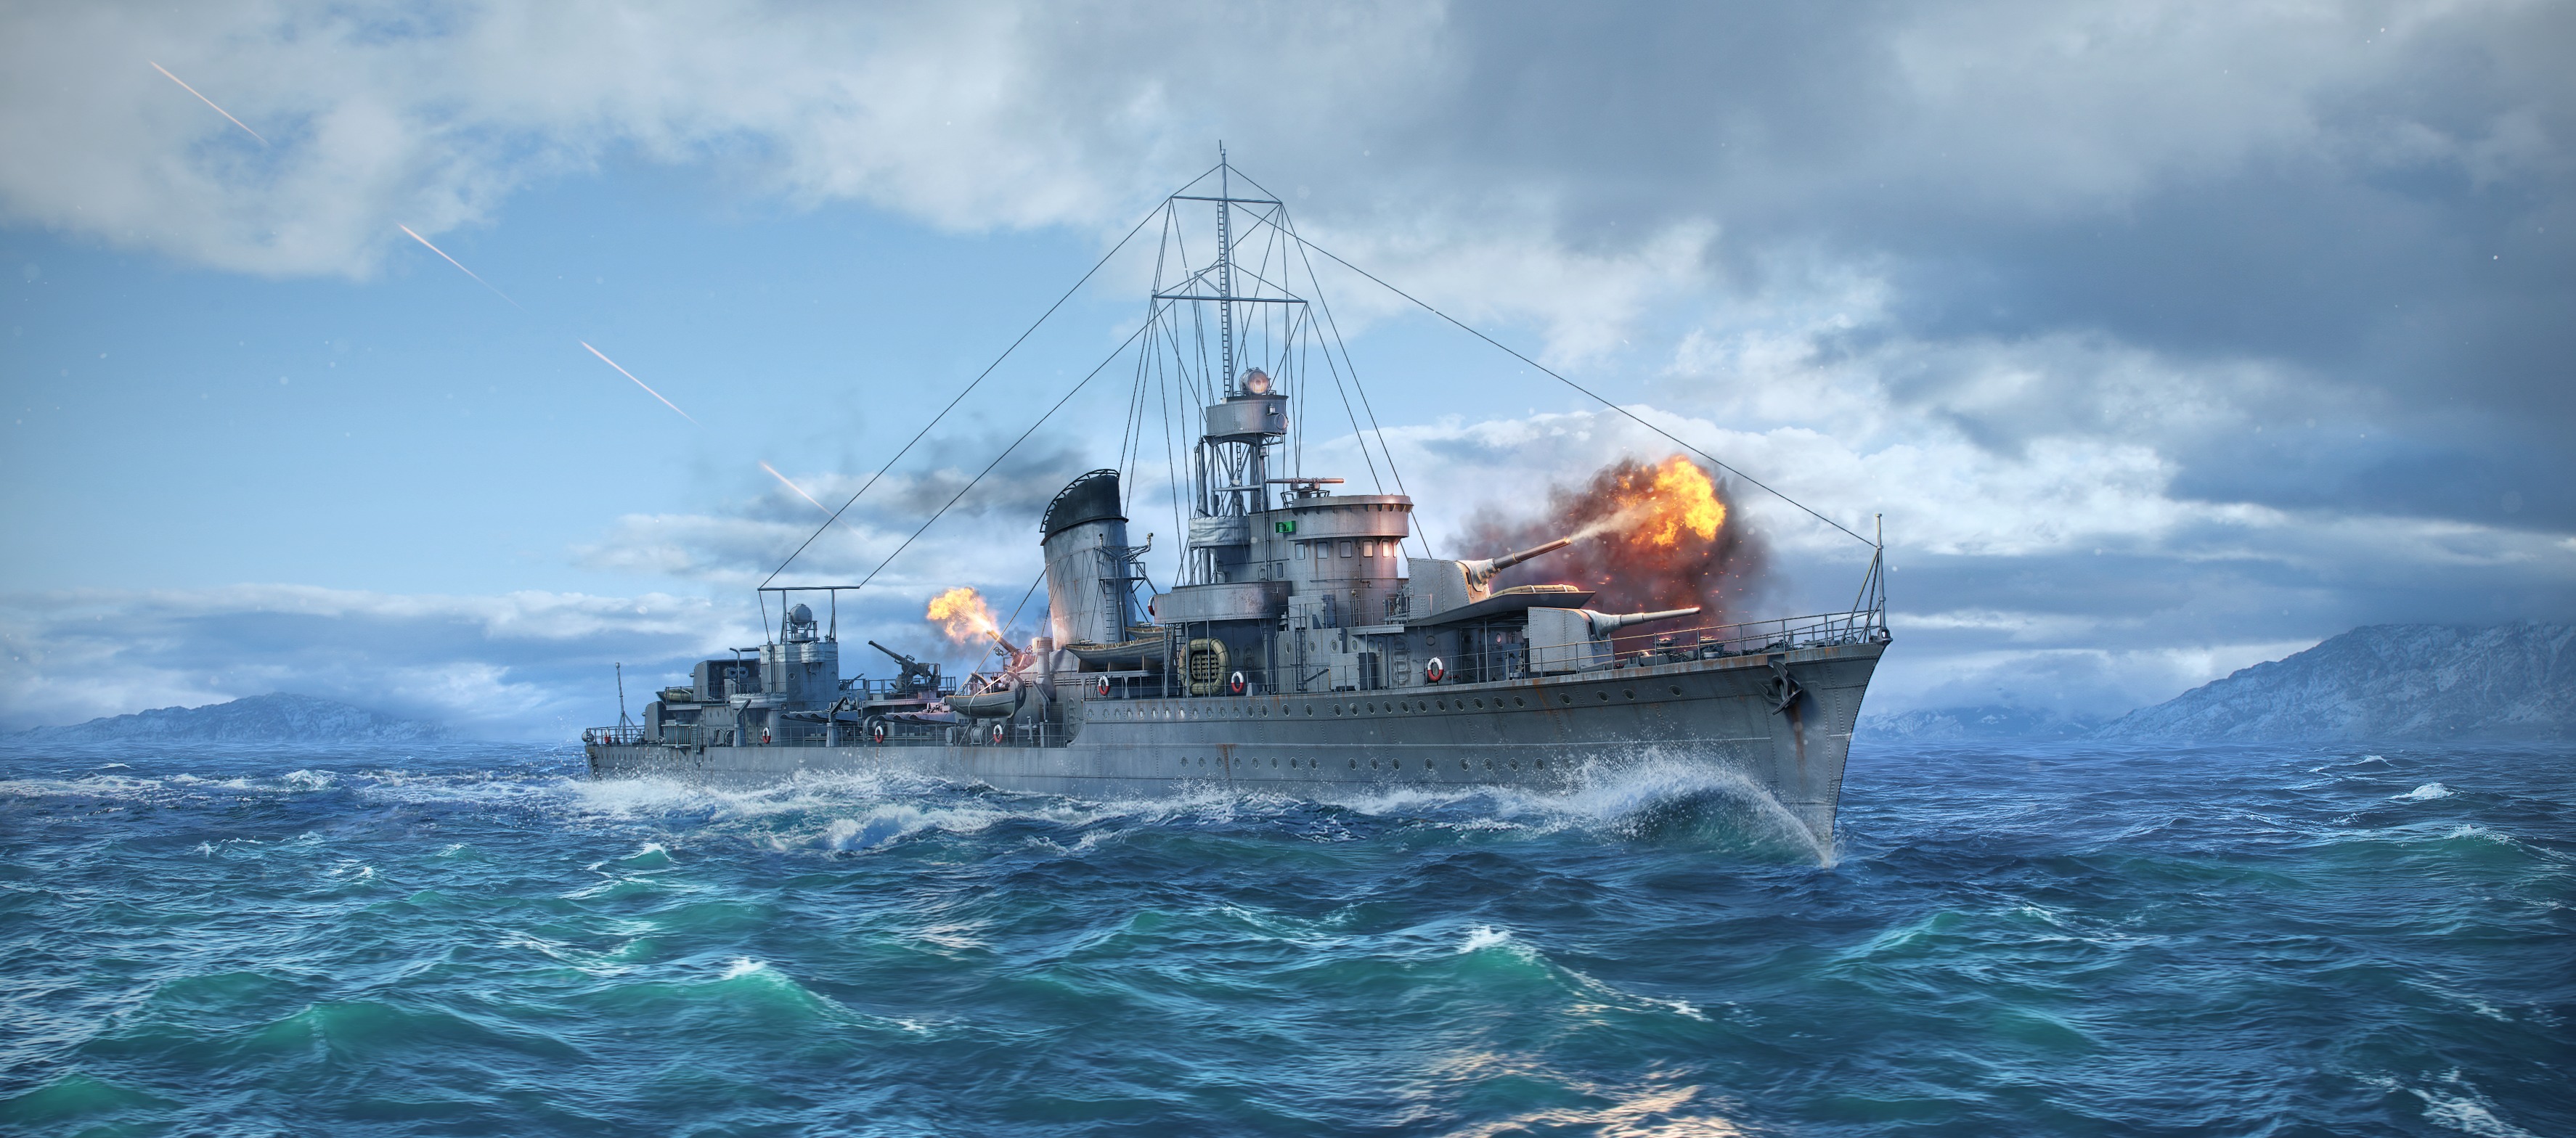 世界的战舰 驱逐舰 军舰 海军的船 船只高清壁纸 武器图片 桌面背景和图片